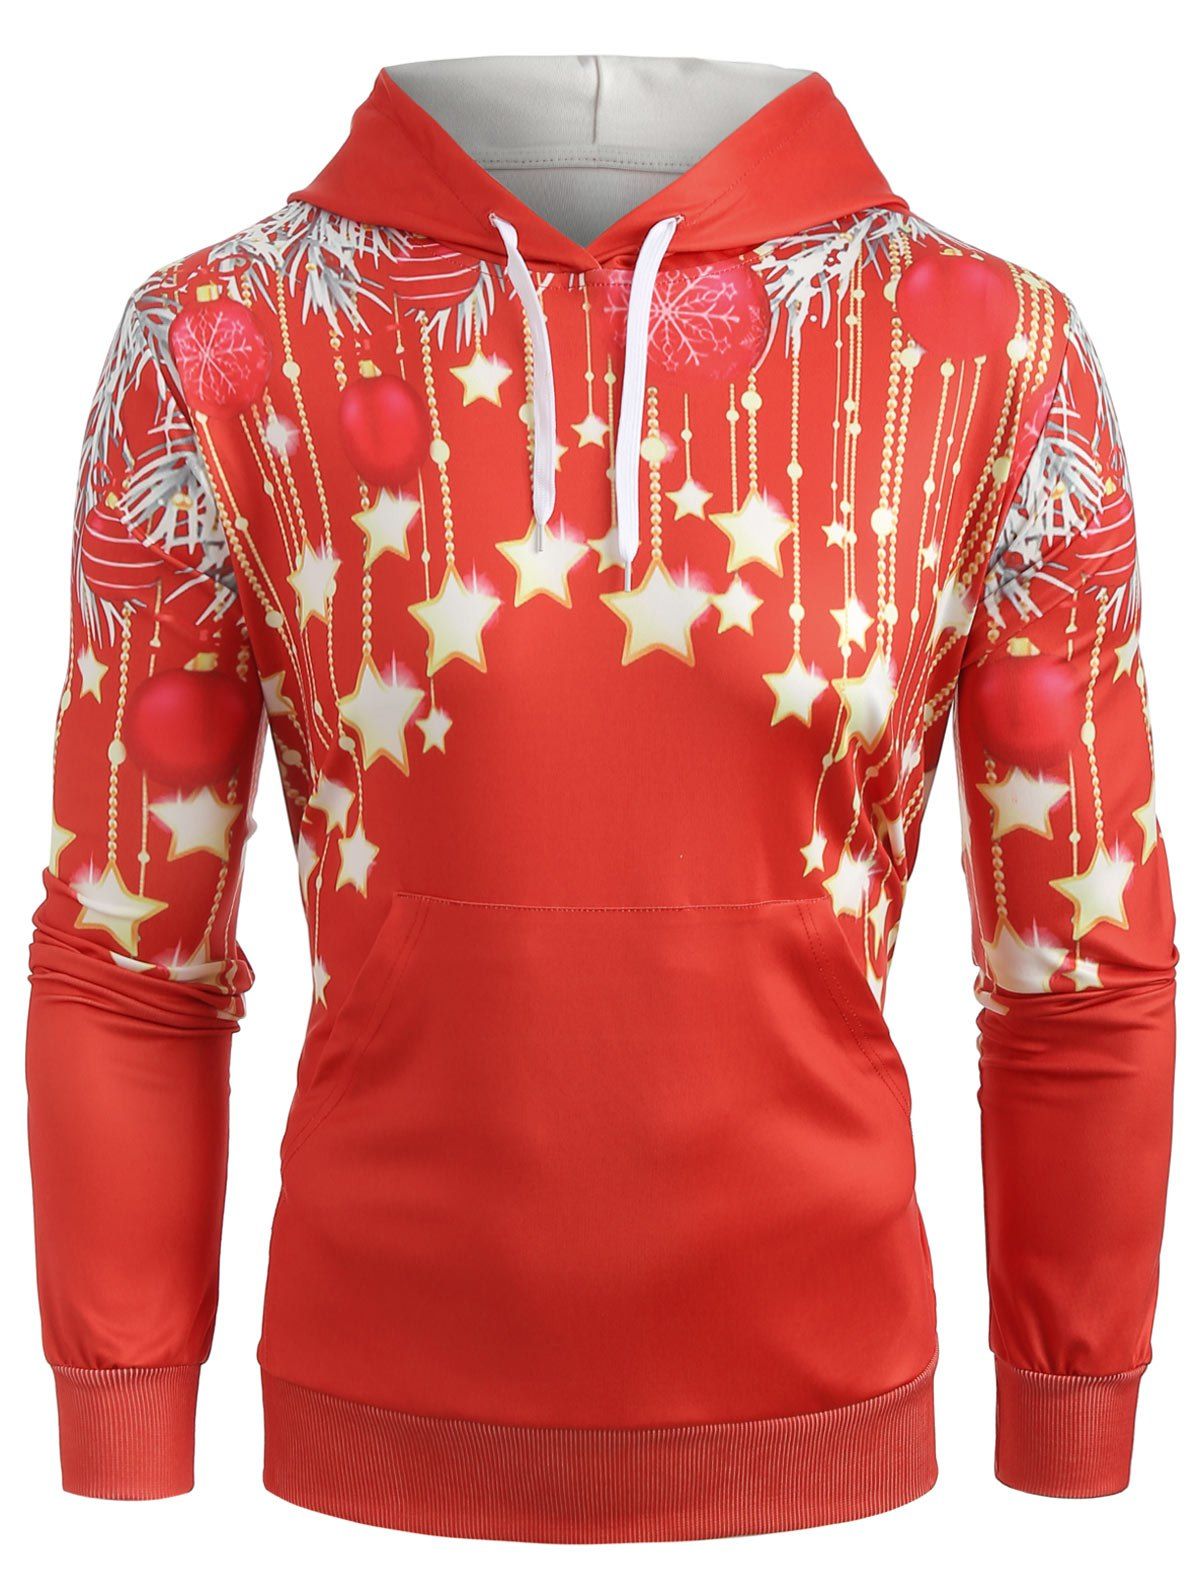 Sweat-Shirt à Capuche Pullover avec Imprimé Etoiles de Noël - Rouge L